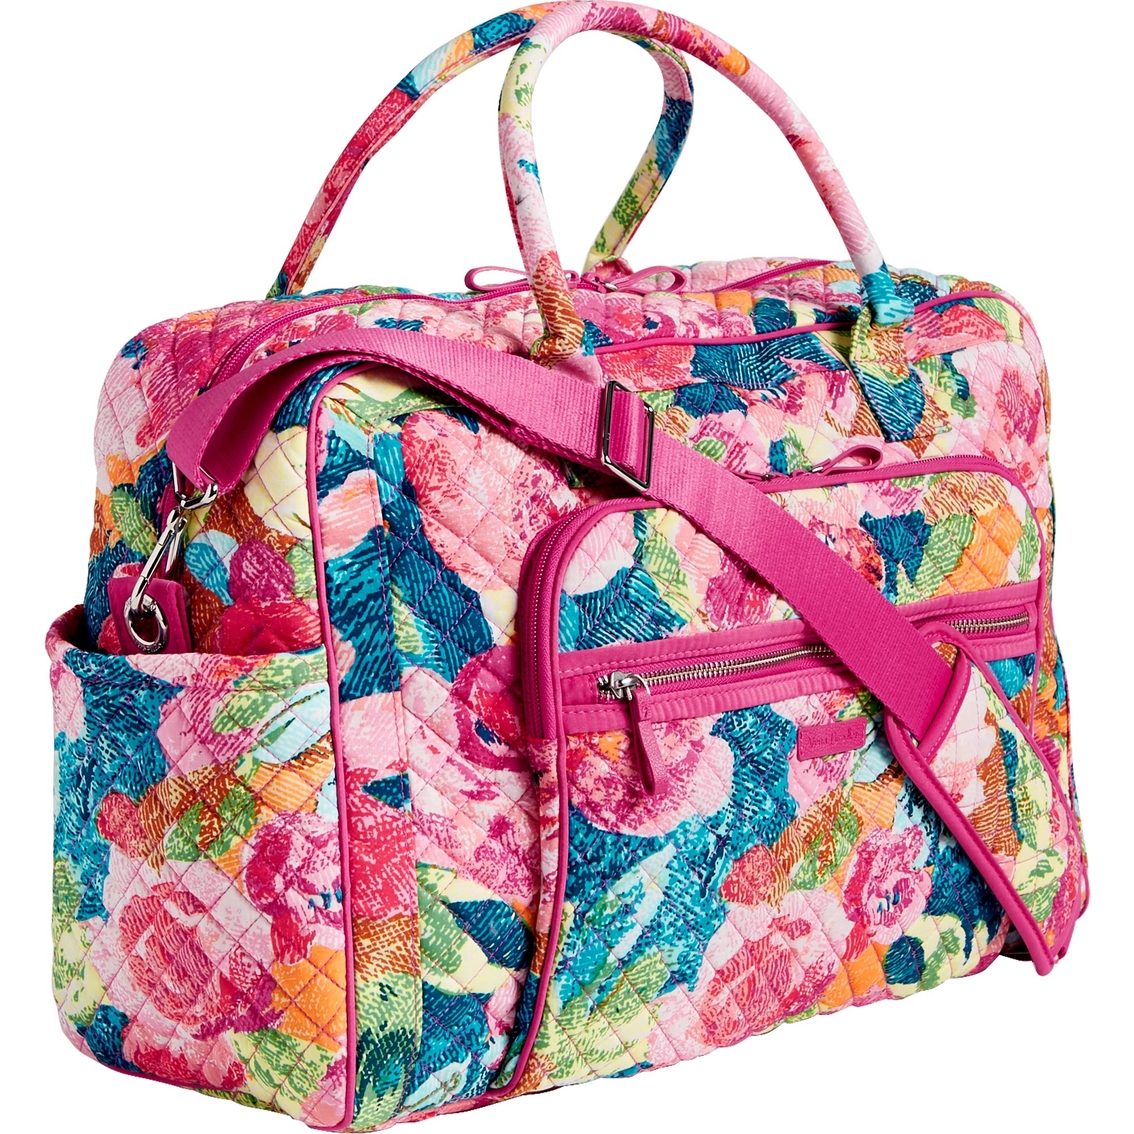 Vera Bradley Iconic Weekender Travel Bag, Superbloom | Shop By Pattern ...